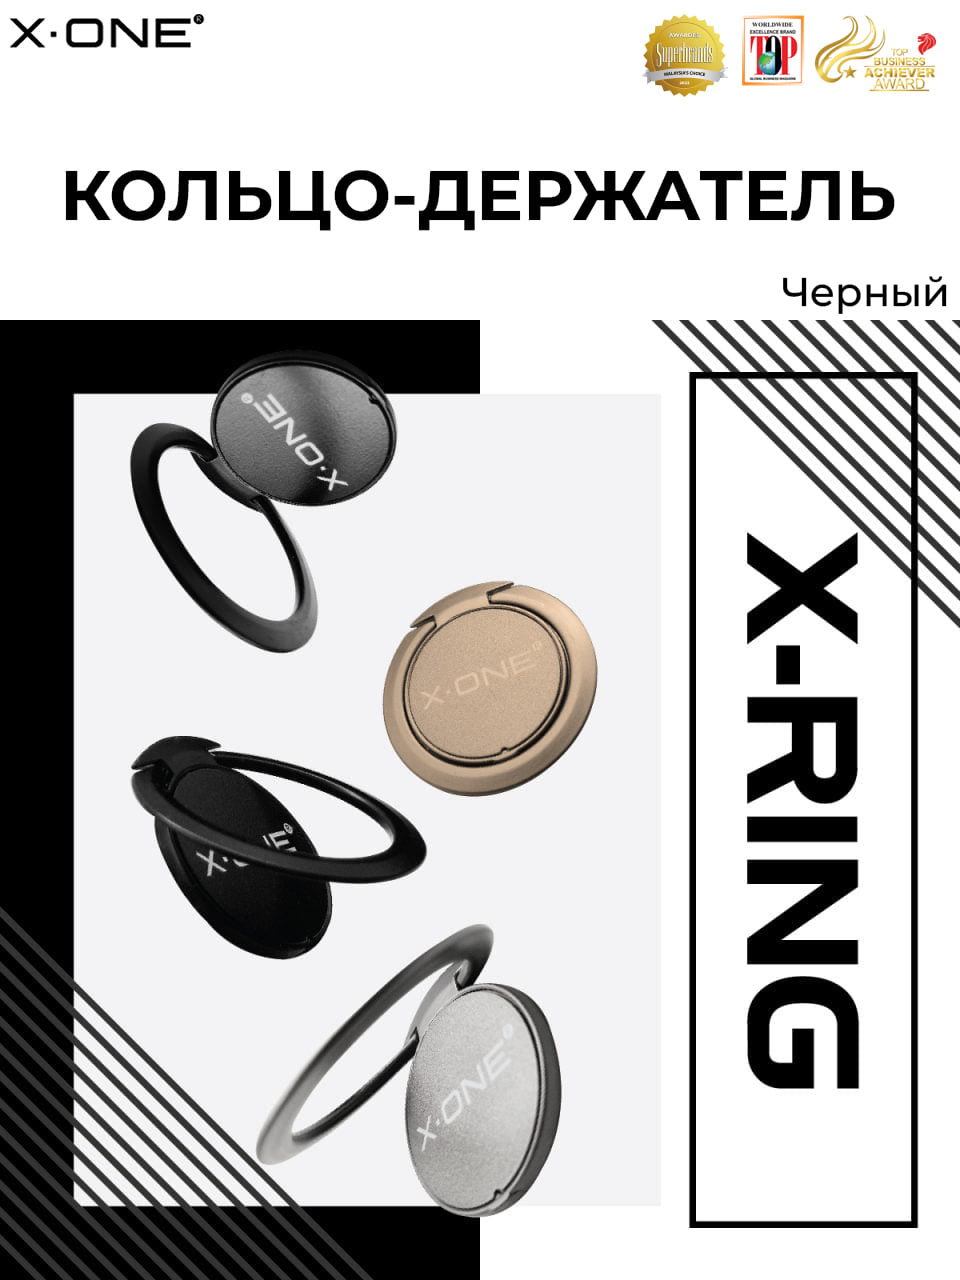 Кольцо-держатель телефона X-ONE X-Ring - черный цвет